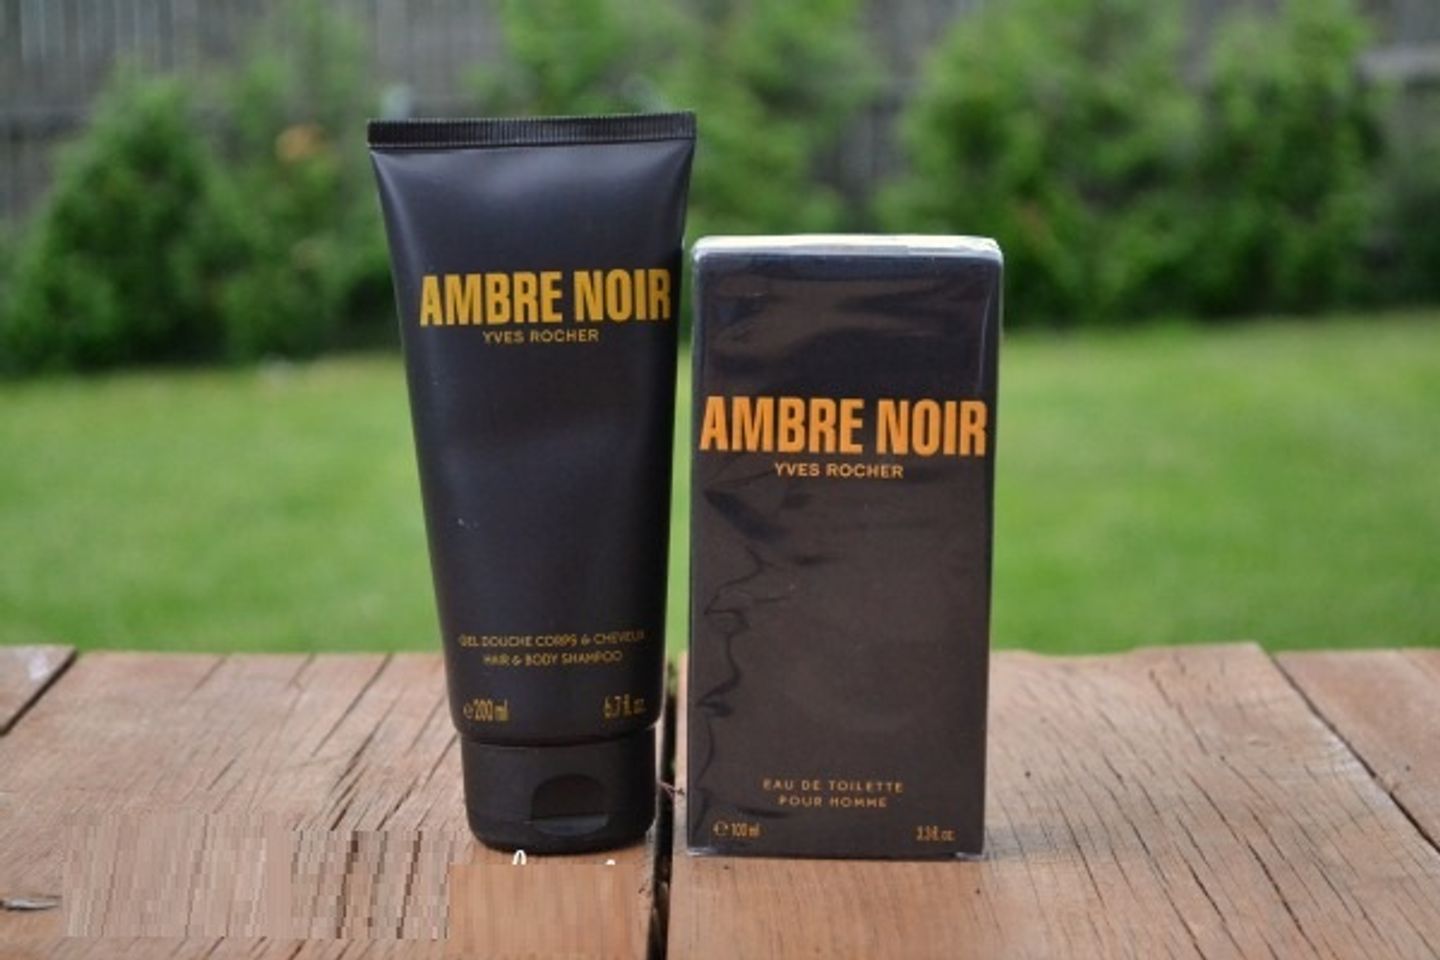 Sữa tắm cho nam Ambre Noir Hair & Body Shampoo mang đến hương thơm quyến rũ từ gỗ và hổ phách